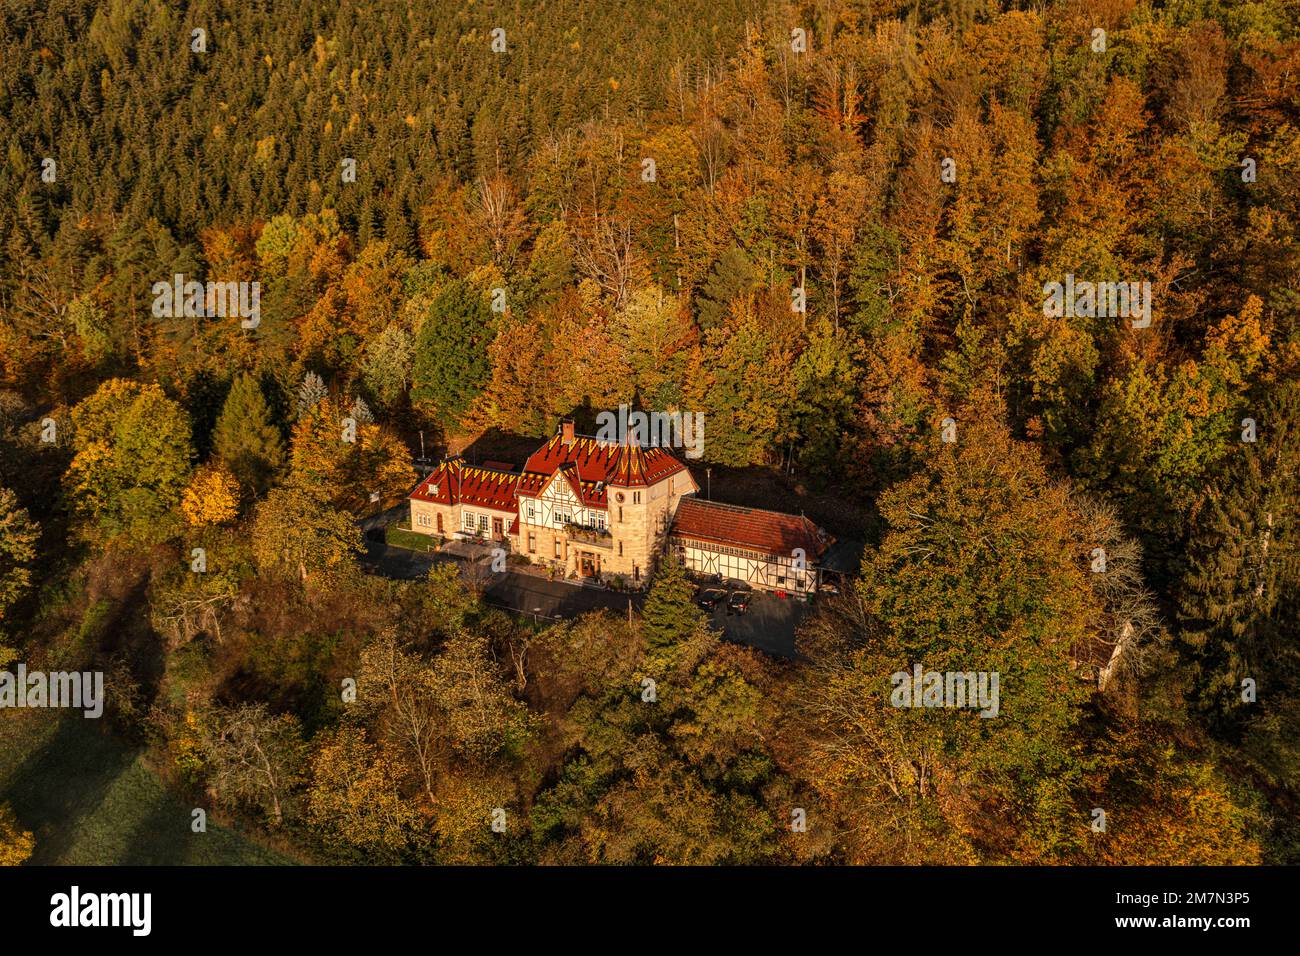 Allemagne, Thuringe, Schwarzburg, maison pittoresque, ancien bâtiment de réception de la gare, forêt, vue aérienne Banque D'Images